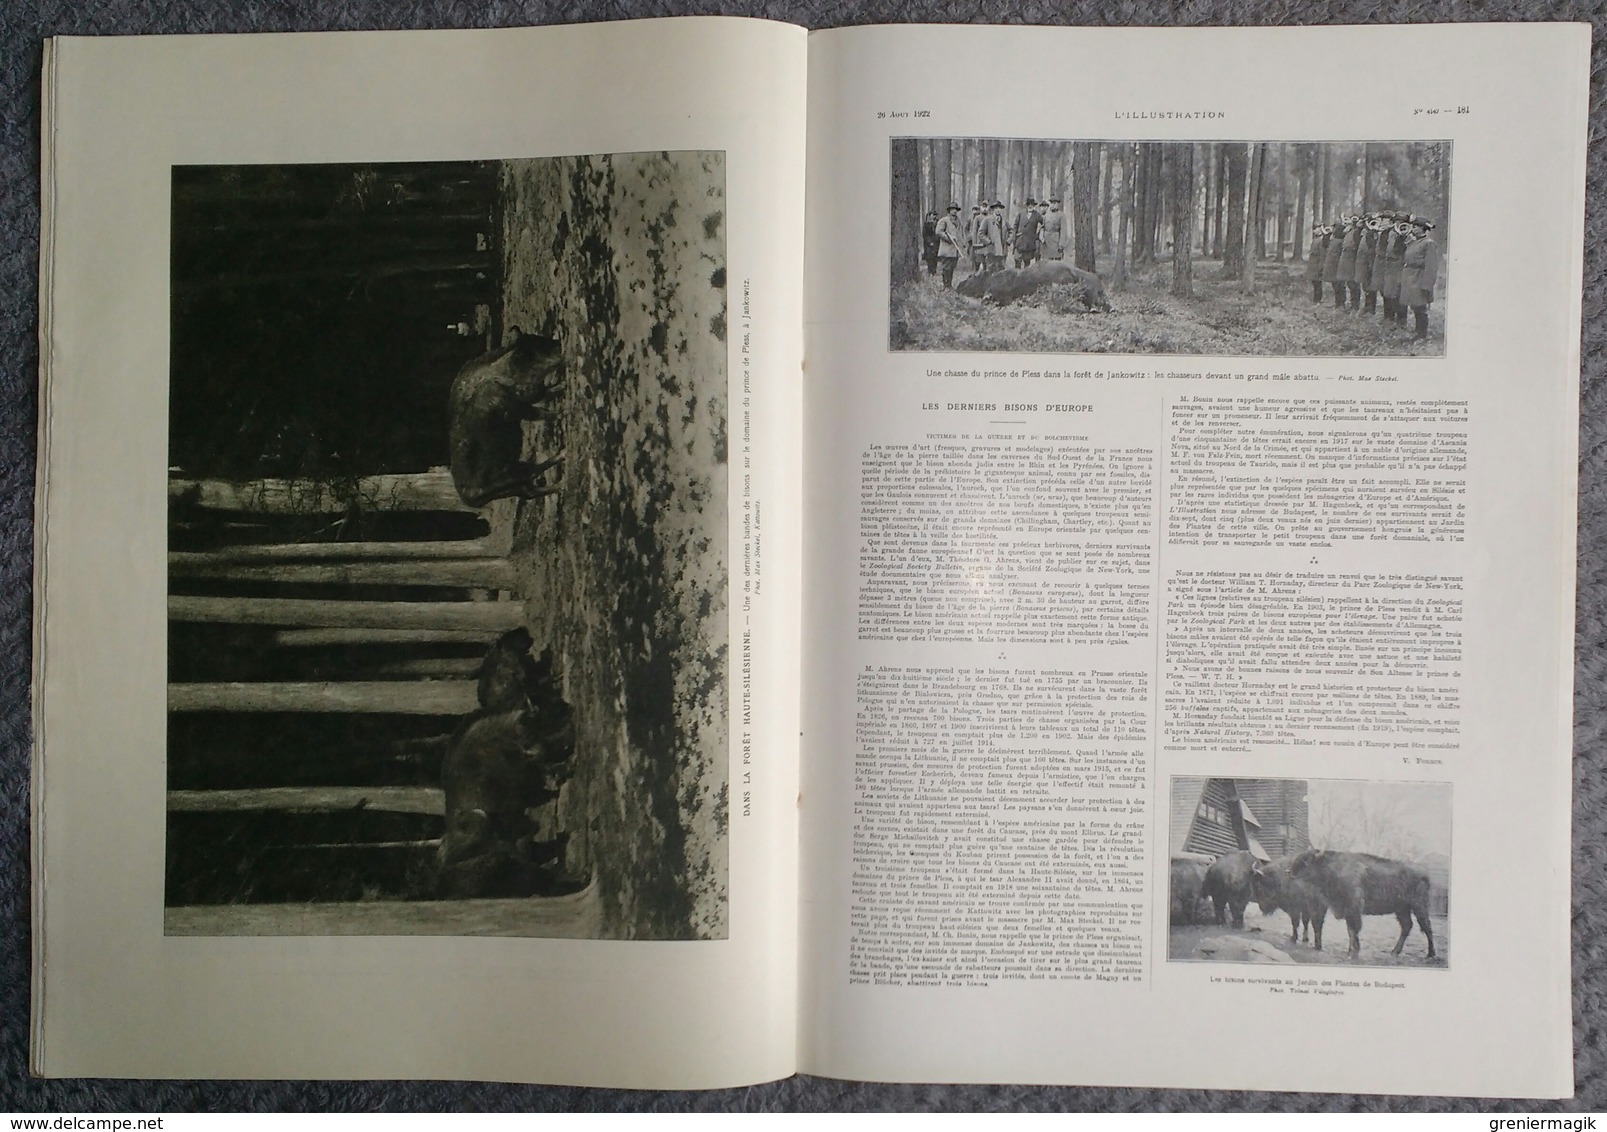 L'Illustration 4147 26 aout 1922 Première borne de la voie sacrée/Ernest Lavisse/Gabriele d'Annunzio/Haute-Silésie bison